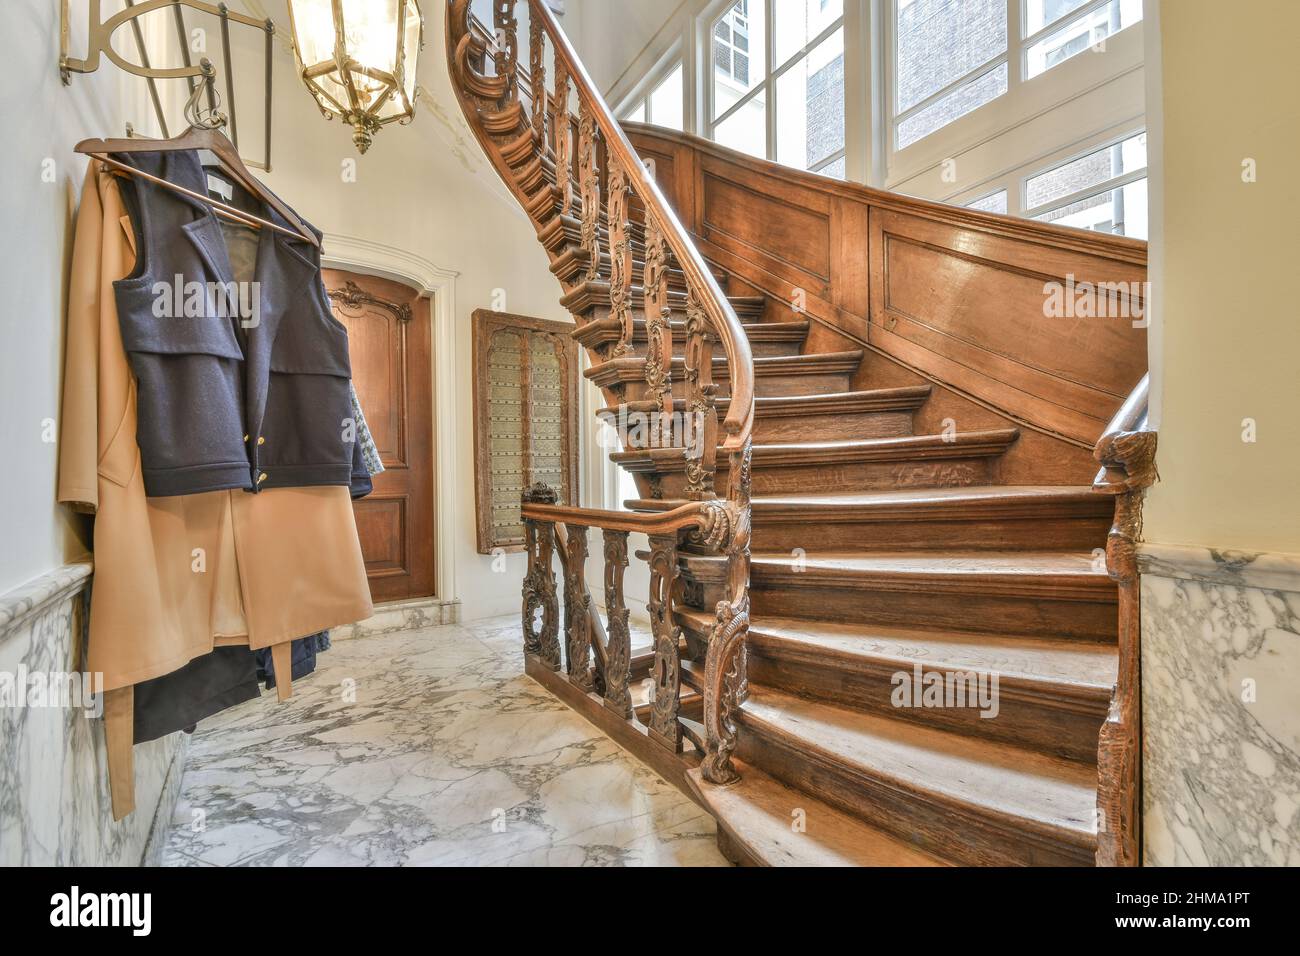 Escalier en bois avec balustrade ornementale placé dans le couloir avec des vêtements accrochés sur un rack dans un appartement lumineux avec des fenêtres à la maison Banque D'Images